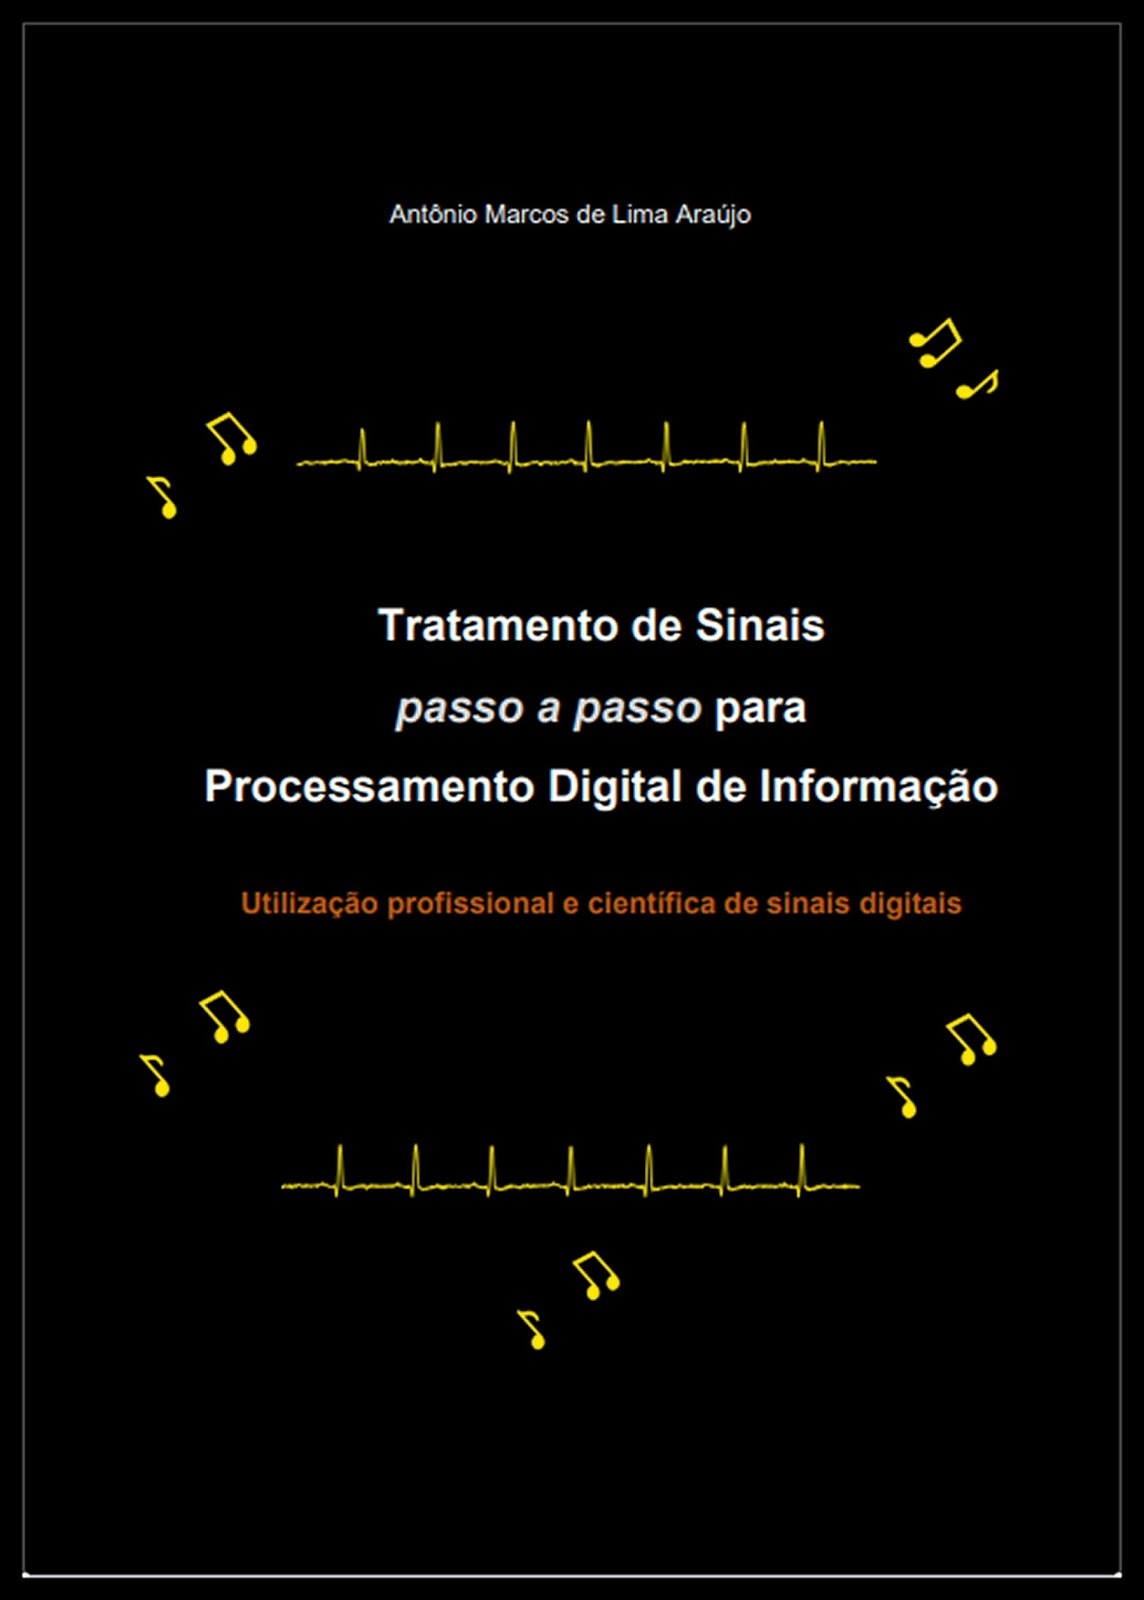 Tratamento de Sinais (passo a passo) para Processamento Digital de Informação